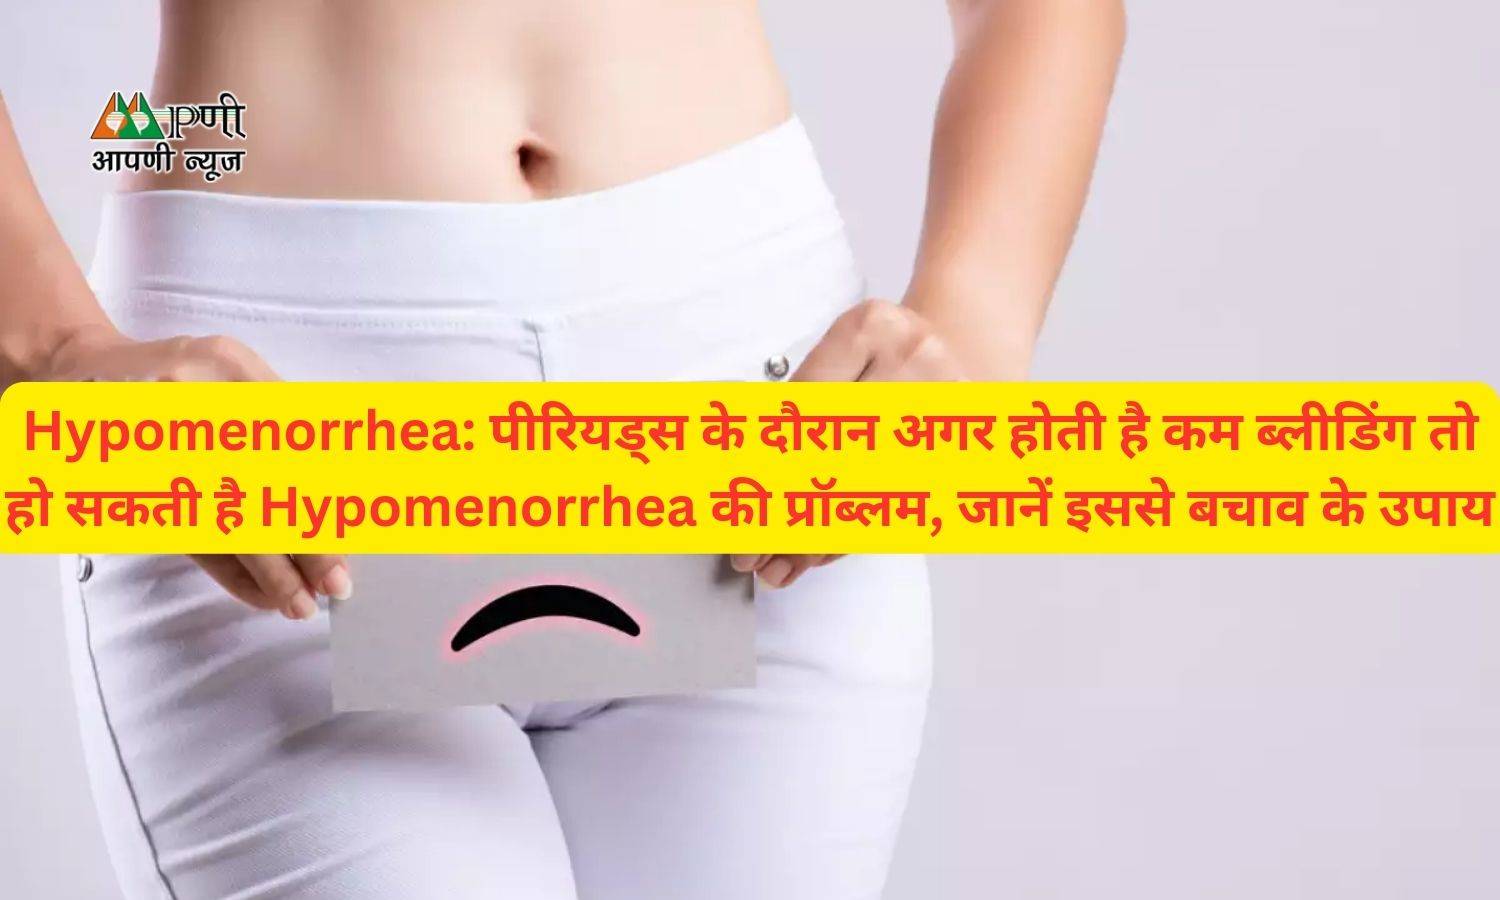 Hypomenorrhea: पीरियड्स के दौरान अगर होती है कम ब्लीडिंग तो हो सकती है Hypomenorrhea की प्रॉब्लम, जानें इससे बचाव के उपाय